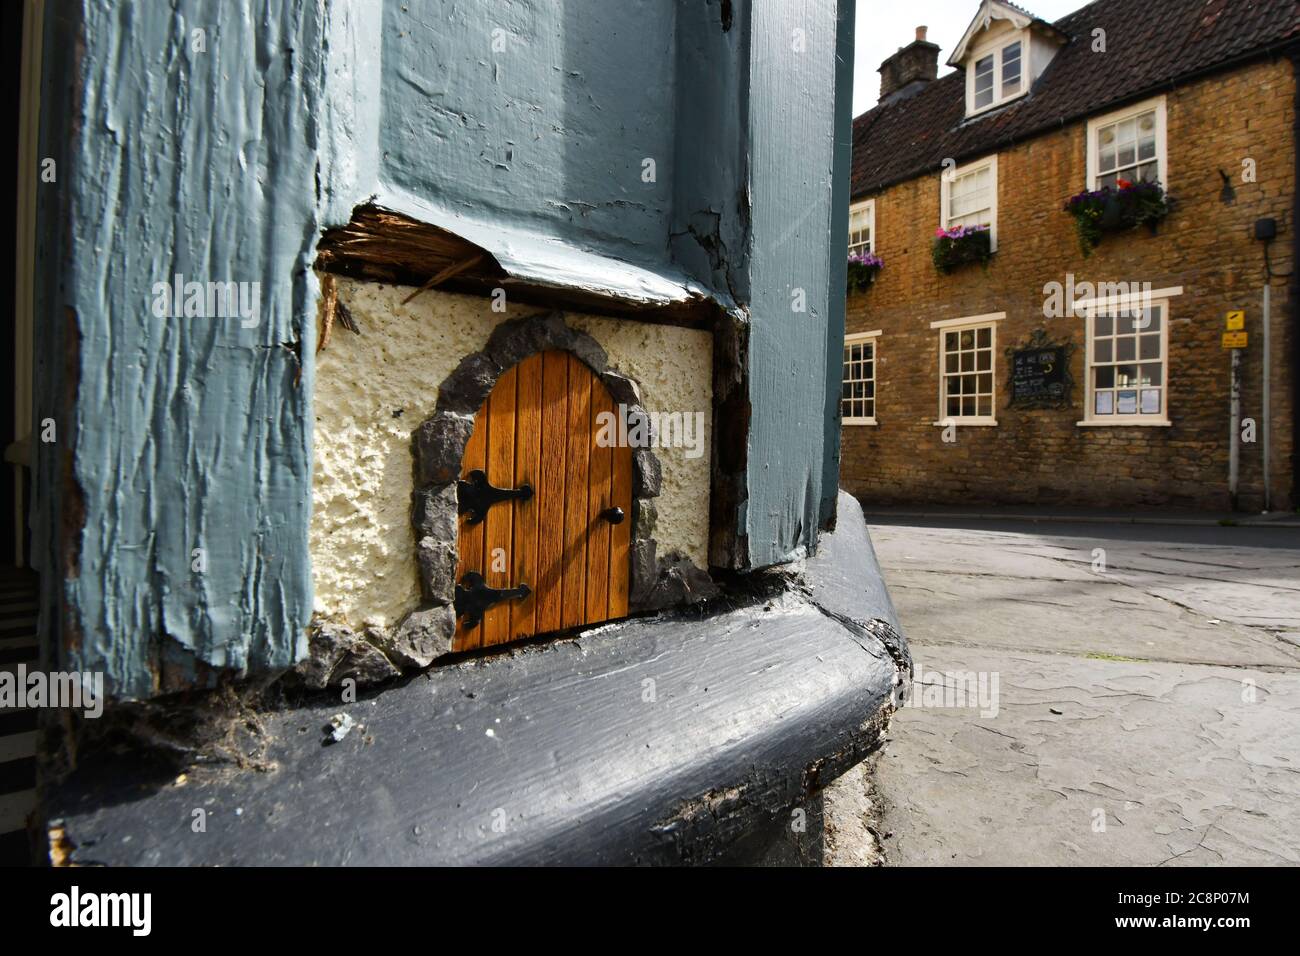 Piccola porta in fondo alla porta principale, al piano terra, ad un negozio a Frome, Somerset. È per la piccola gente, fate o piccoli animali. Foto Stock